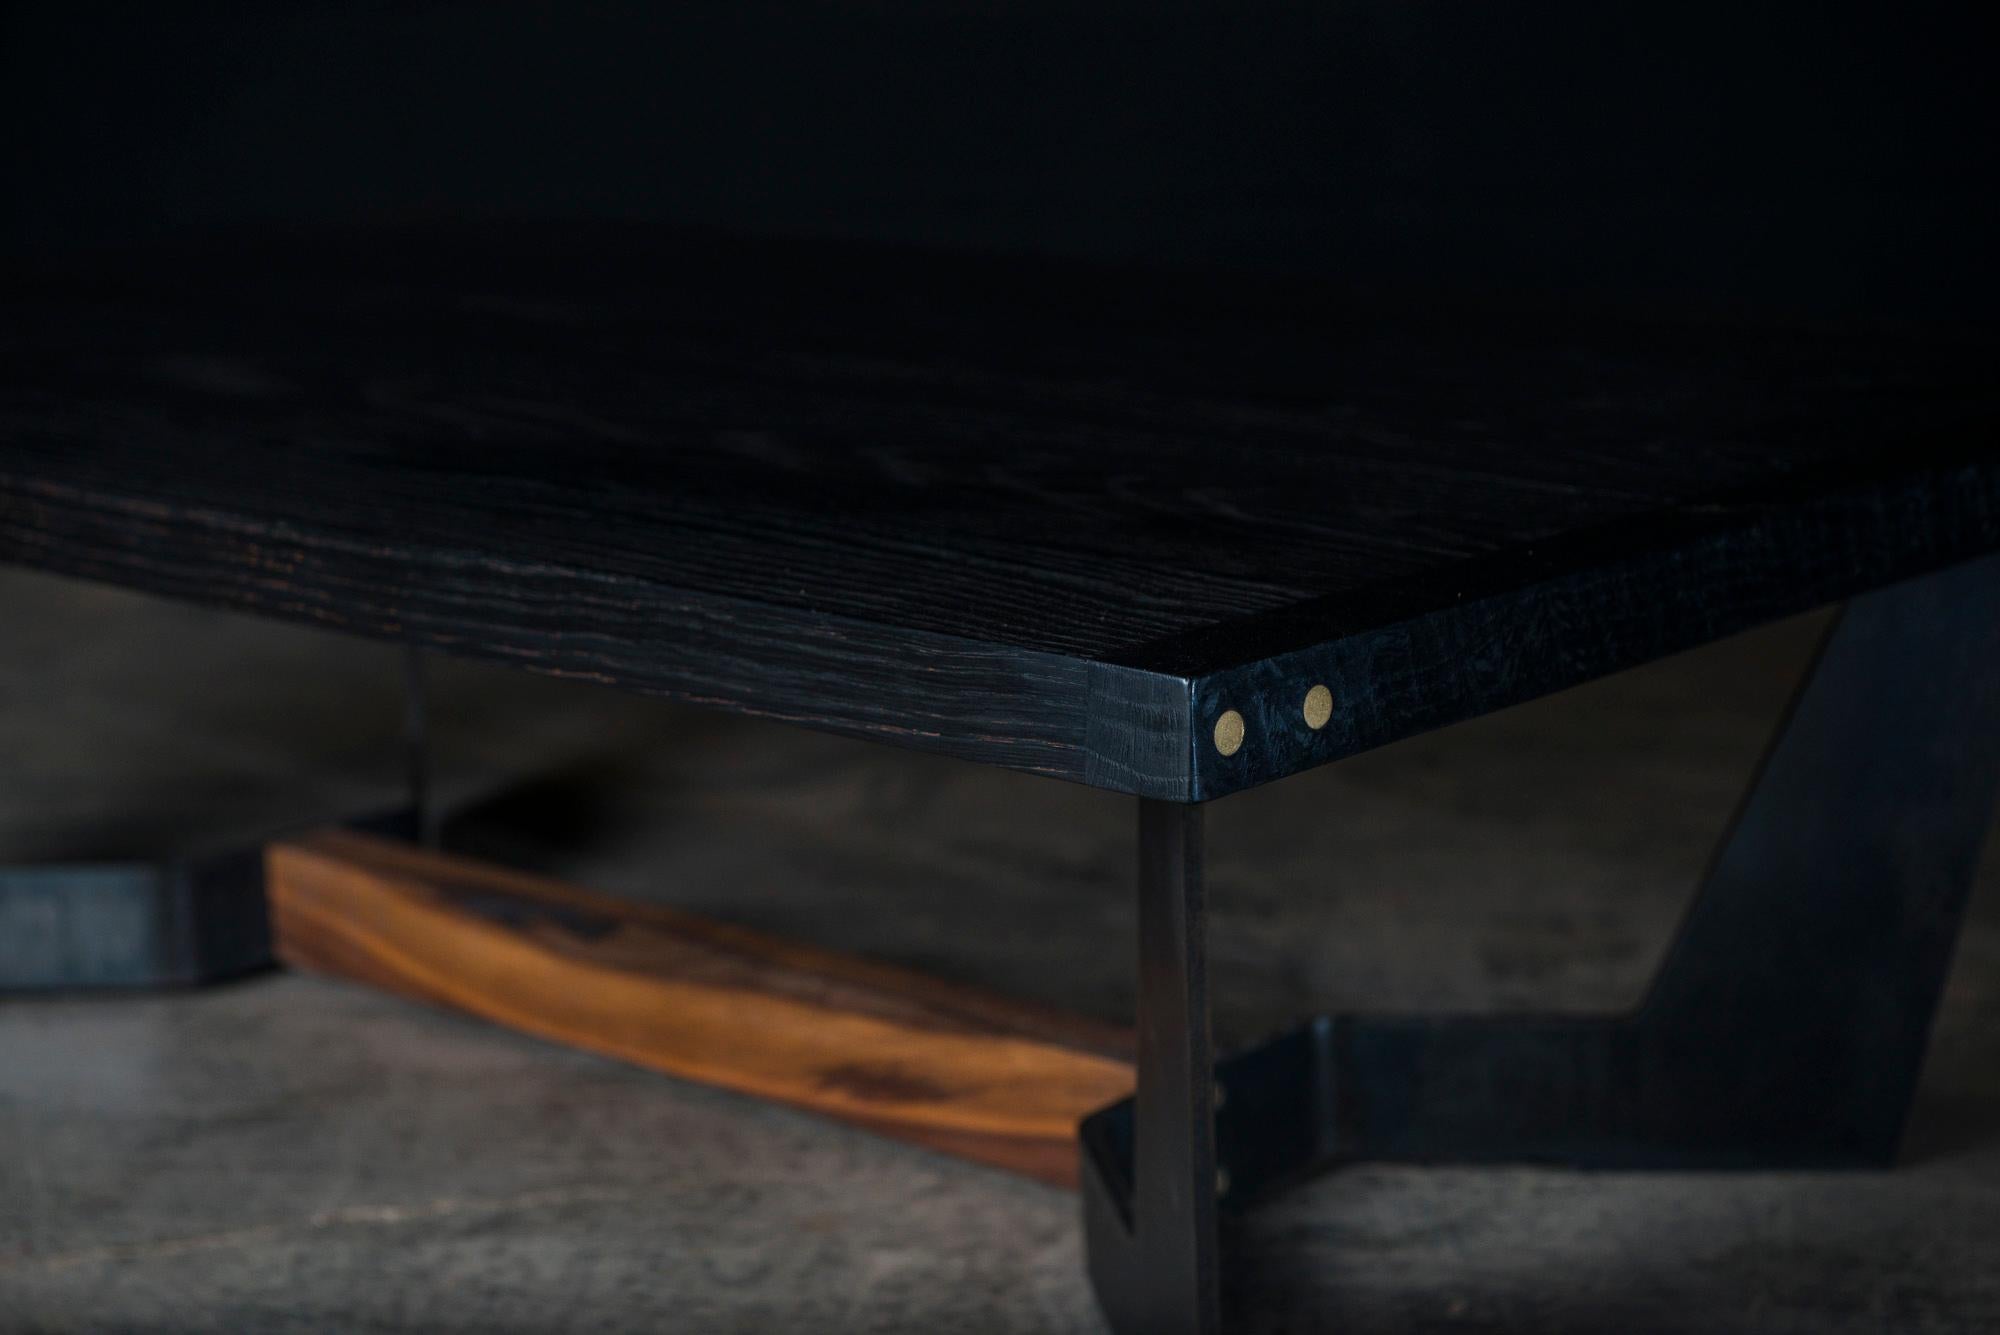 Der Frankin-Mitteltisch ist handgefertigt aus einer dicken Massivholzoberfläche und verfügt über subtile handpolierte Messingdetails am Ende. Es hat eine handgeriebene natürliche Öl- und Wachsoberfläche, die die wahre Schönheit des Holzes hervorhebt